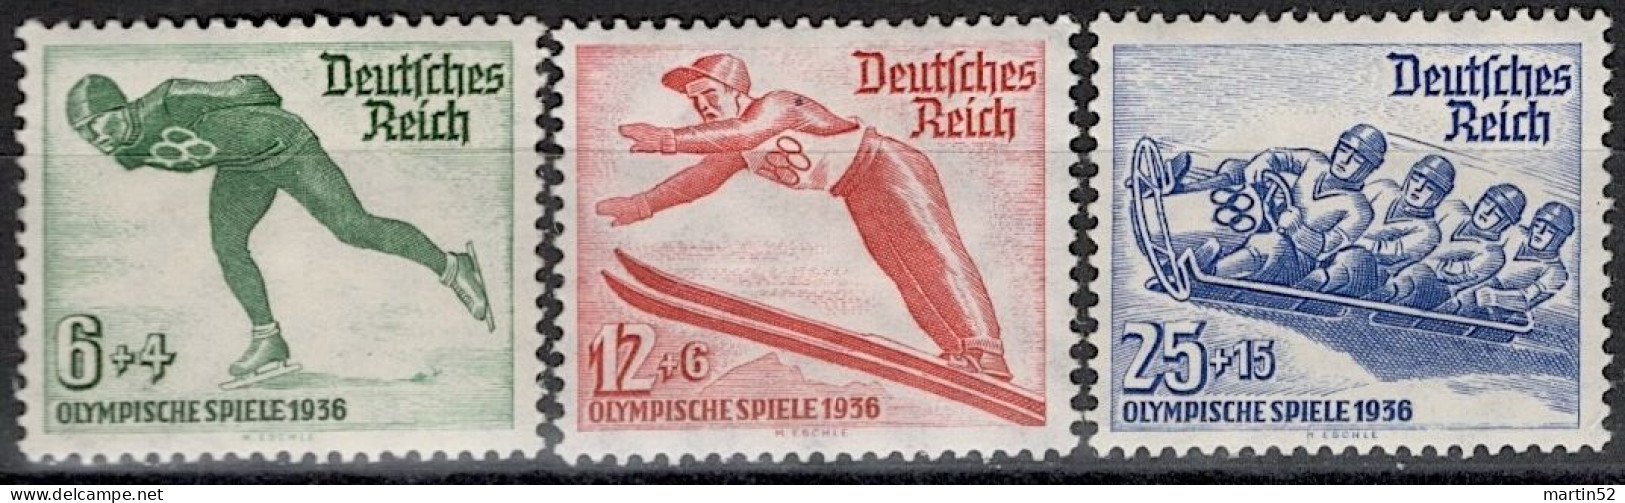 Deutsches Reich Allemagne Germany 1936: Winter-Olympiade Garmisch-Partenkirchen  "Skate Saut Bob" Michel-N° 600-602 * - Invierno 1936: Garmisch-Partenkirchen